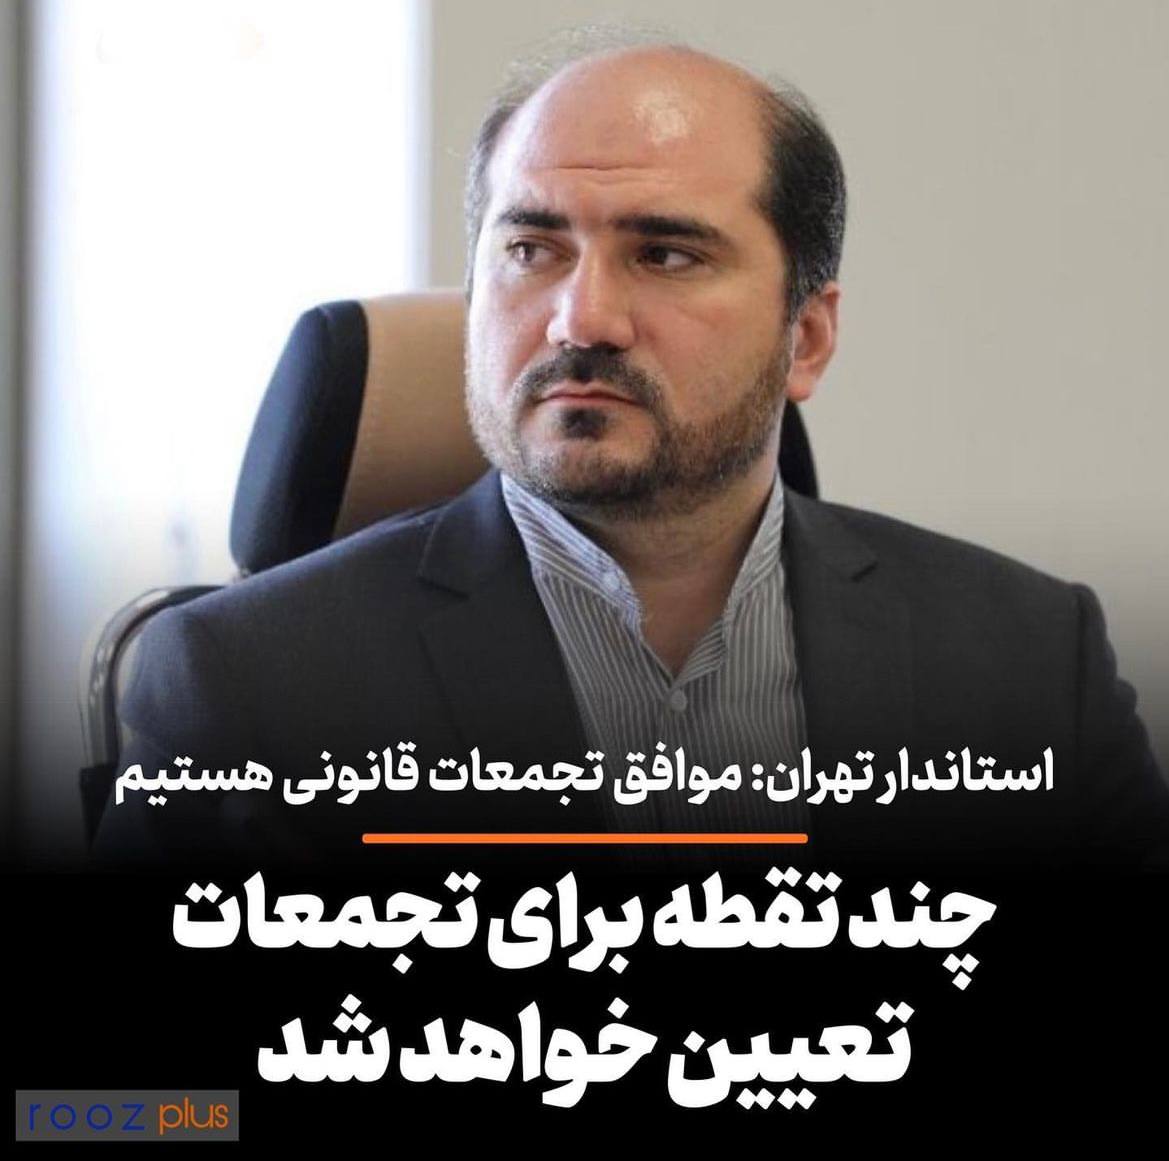 چند نقطه در تهران برای برگزاری تجمعات قانونی مشخص خواهدشد/ درخواست تجمعات به صورت قانونی ارائه‌شود، پس از بررسی مجوز دریافت خواهد کرد